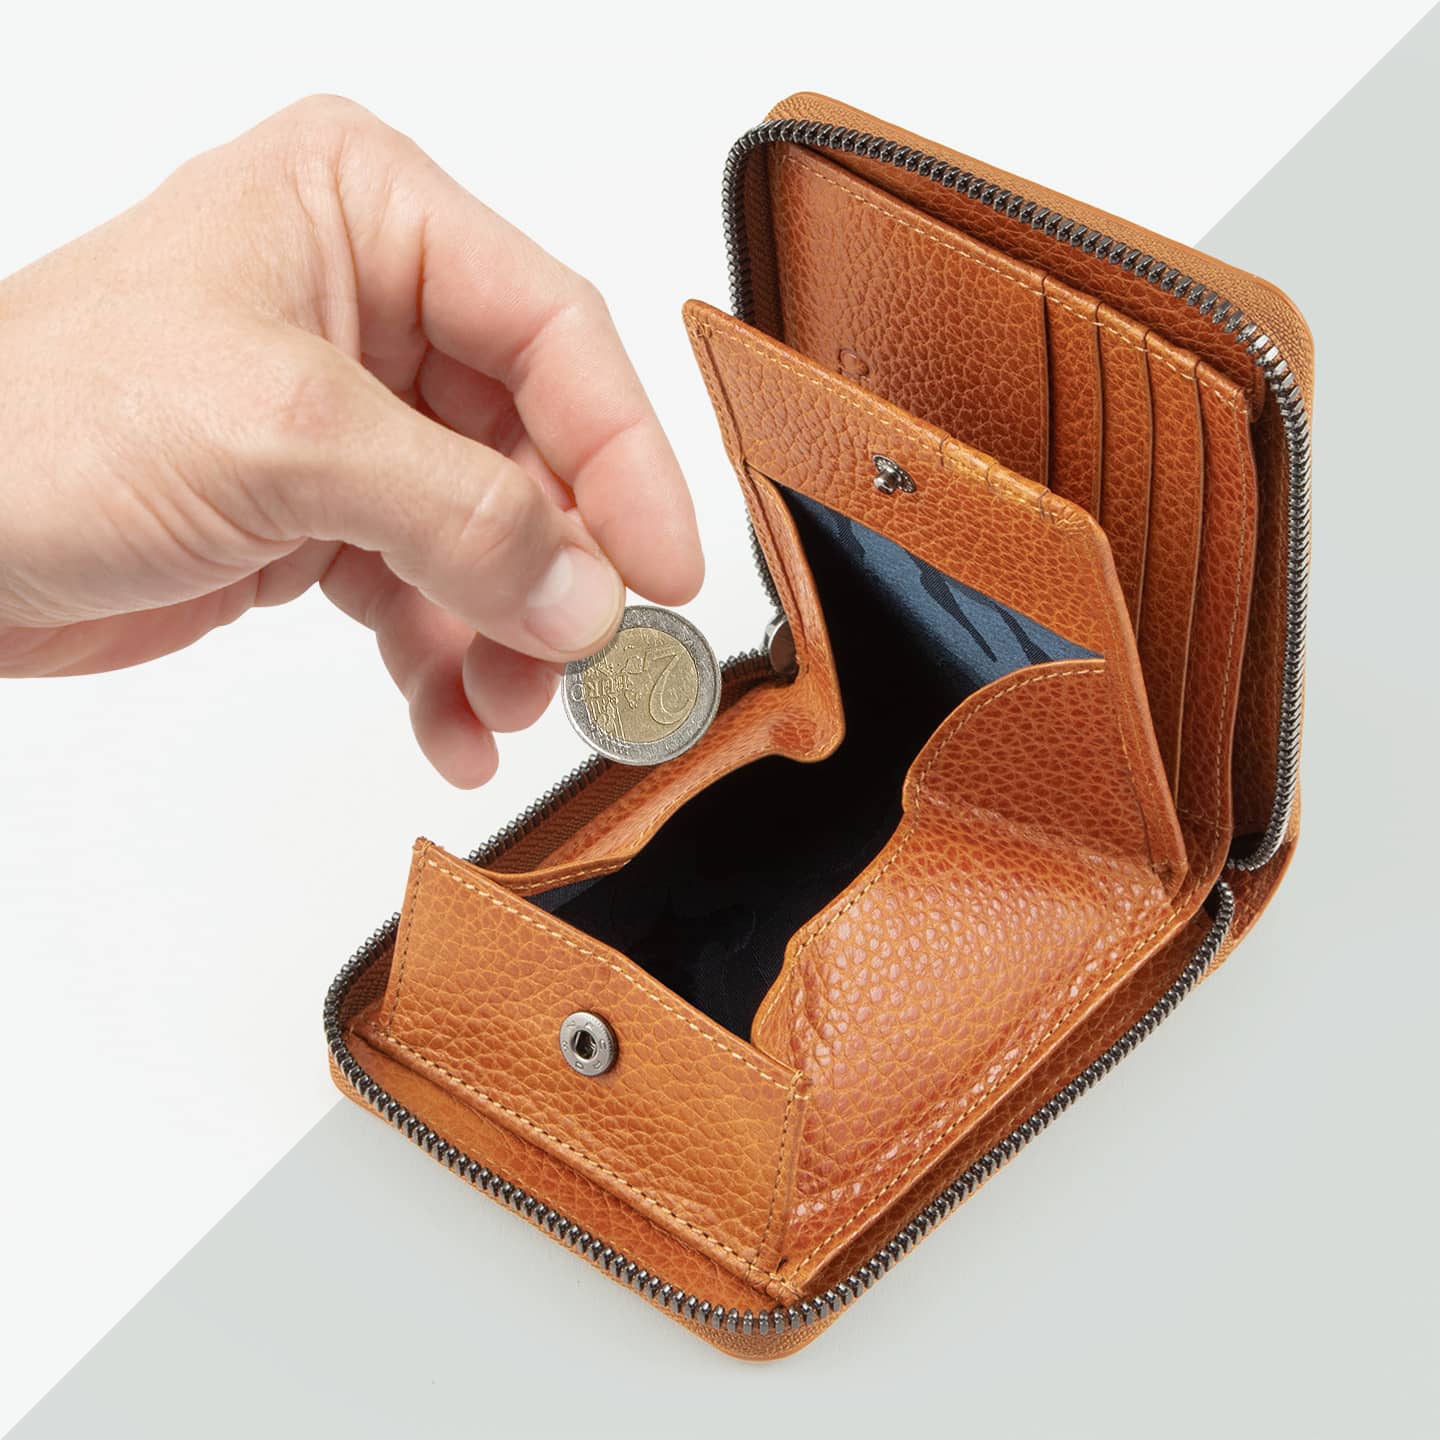 ベルーガ ラウンドジップ二つ折り財布 | 大人の財布・ 二つ折り財布 など拘りの日本製ブランドなら Mens Leather Store